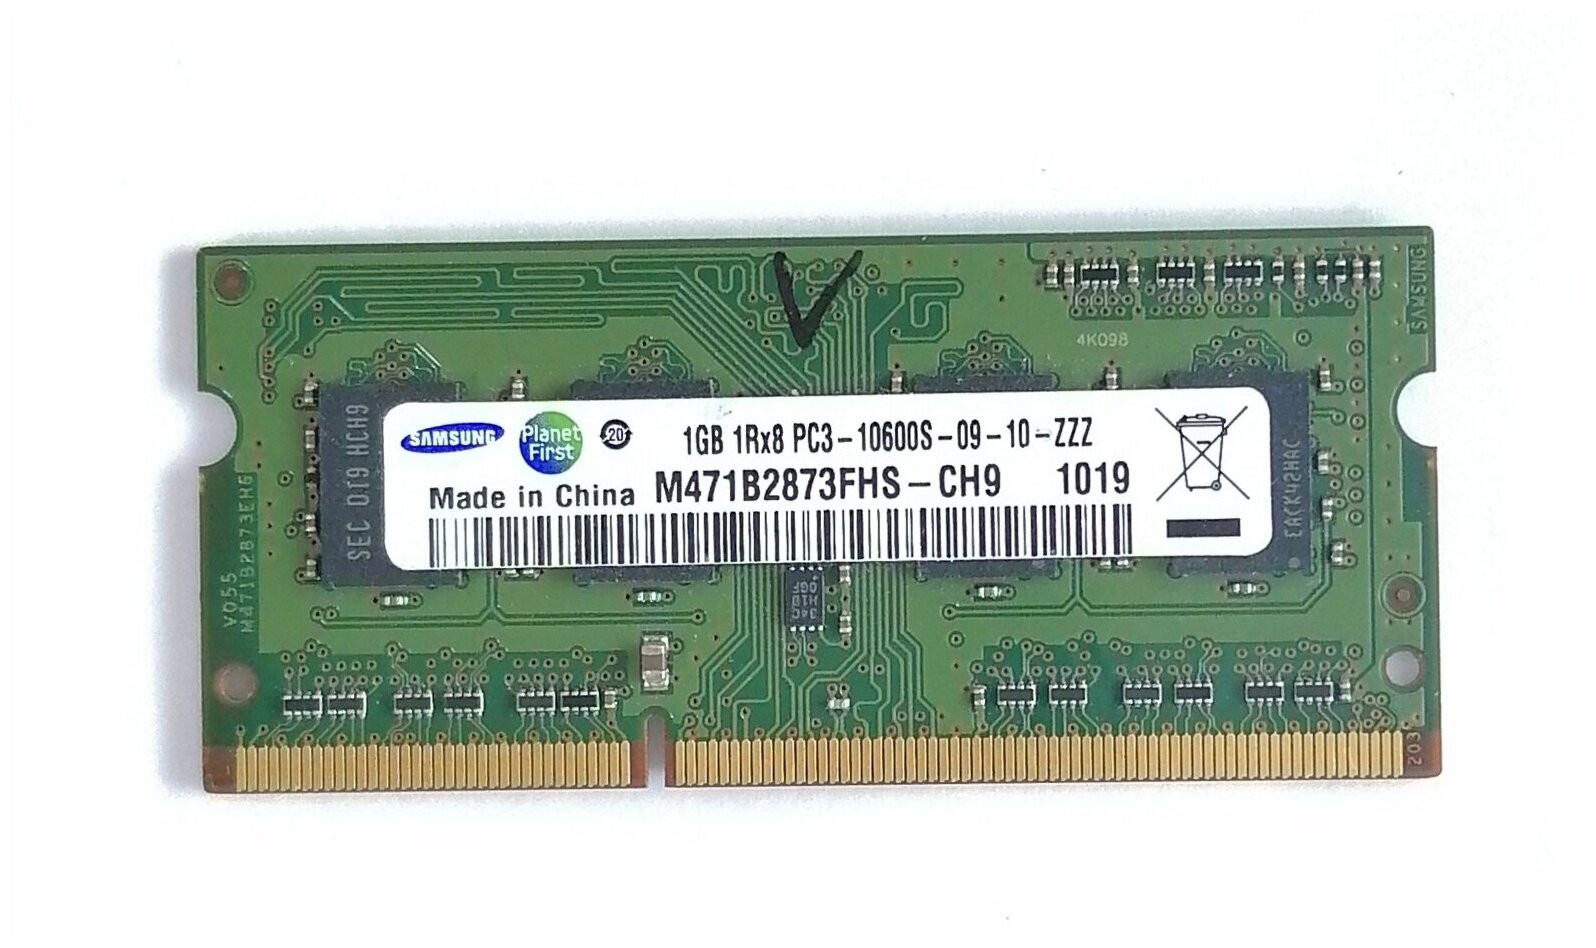 ОЗУ-DDR 3 1Gb (1R8x8 PC3-10600-09-10-ZZZ) (снятый, оригинал)